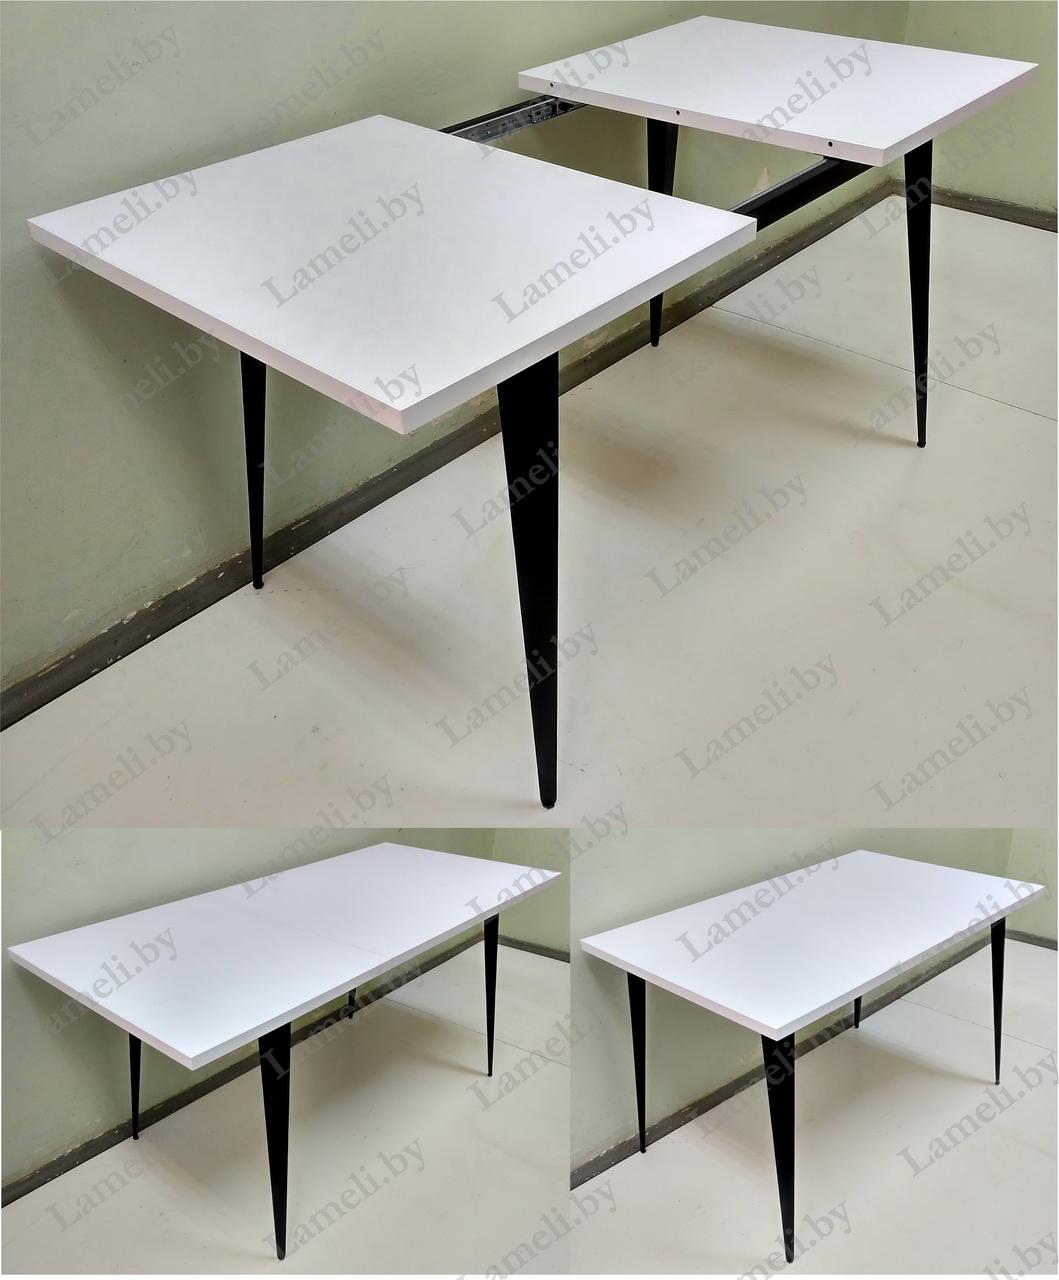 В НАЛИЧИИ Стол кухонный раздвижной на цельно сварной раме из постформинга (пластика) 1190(1580)х750 мм.